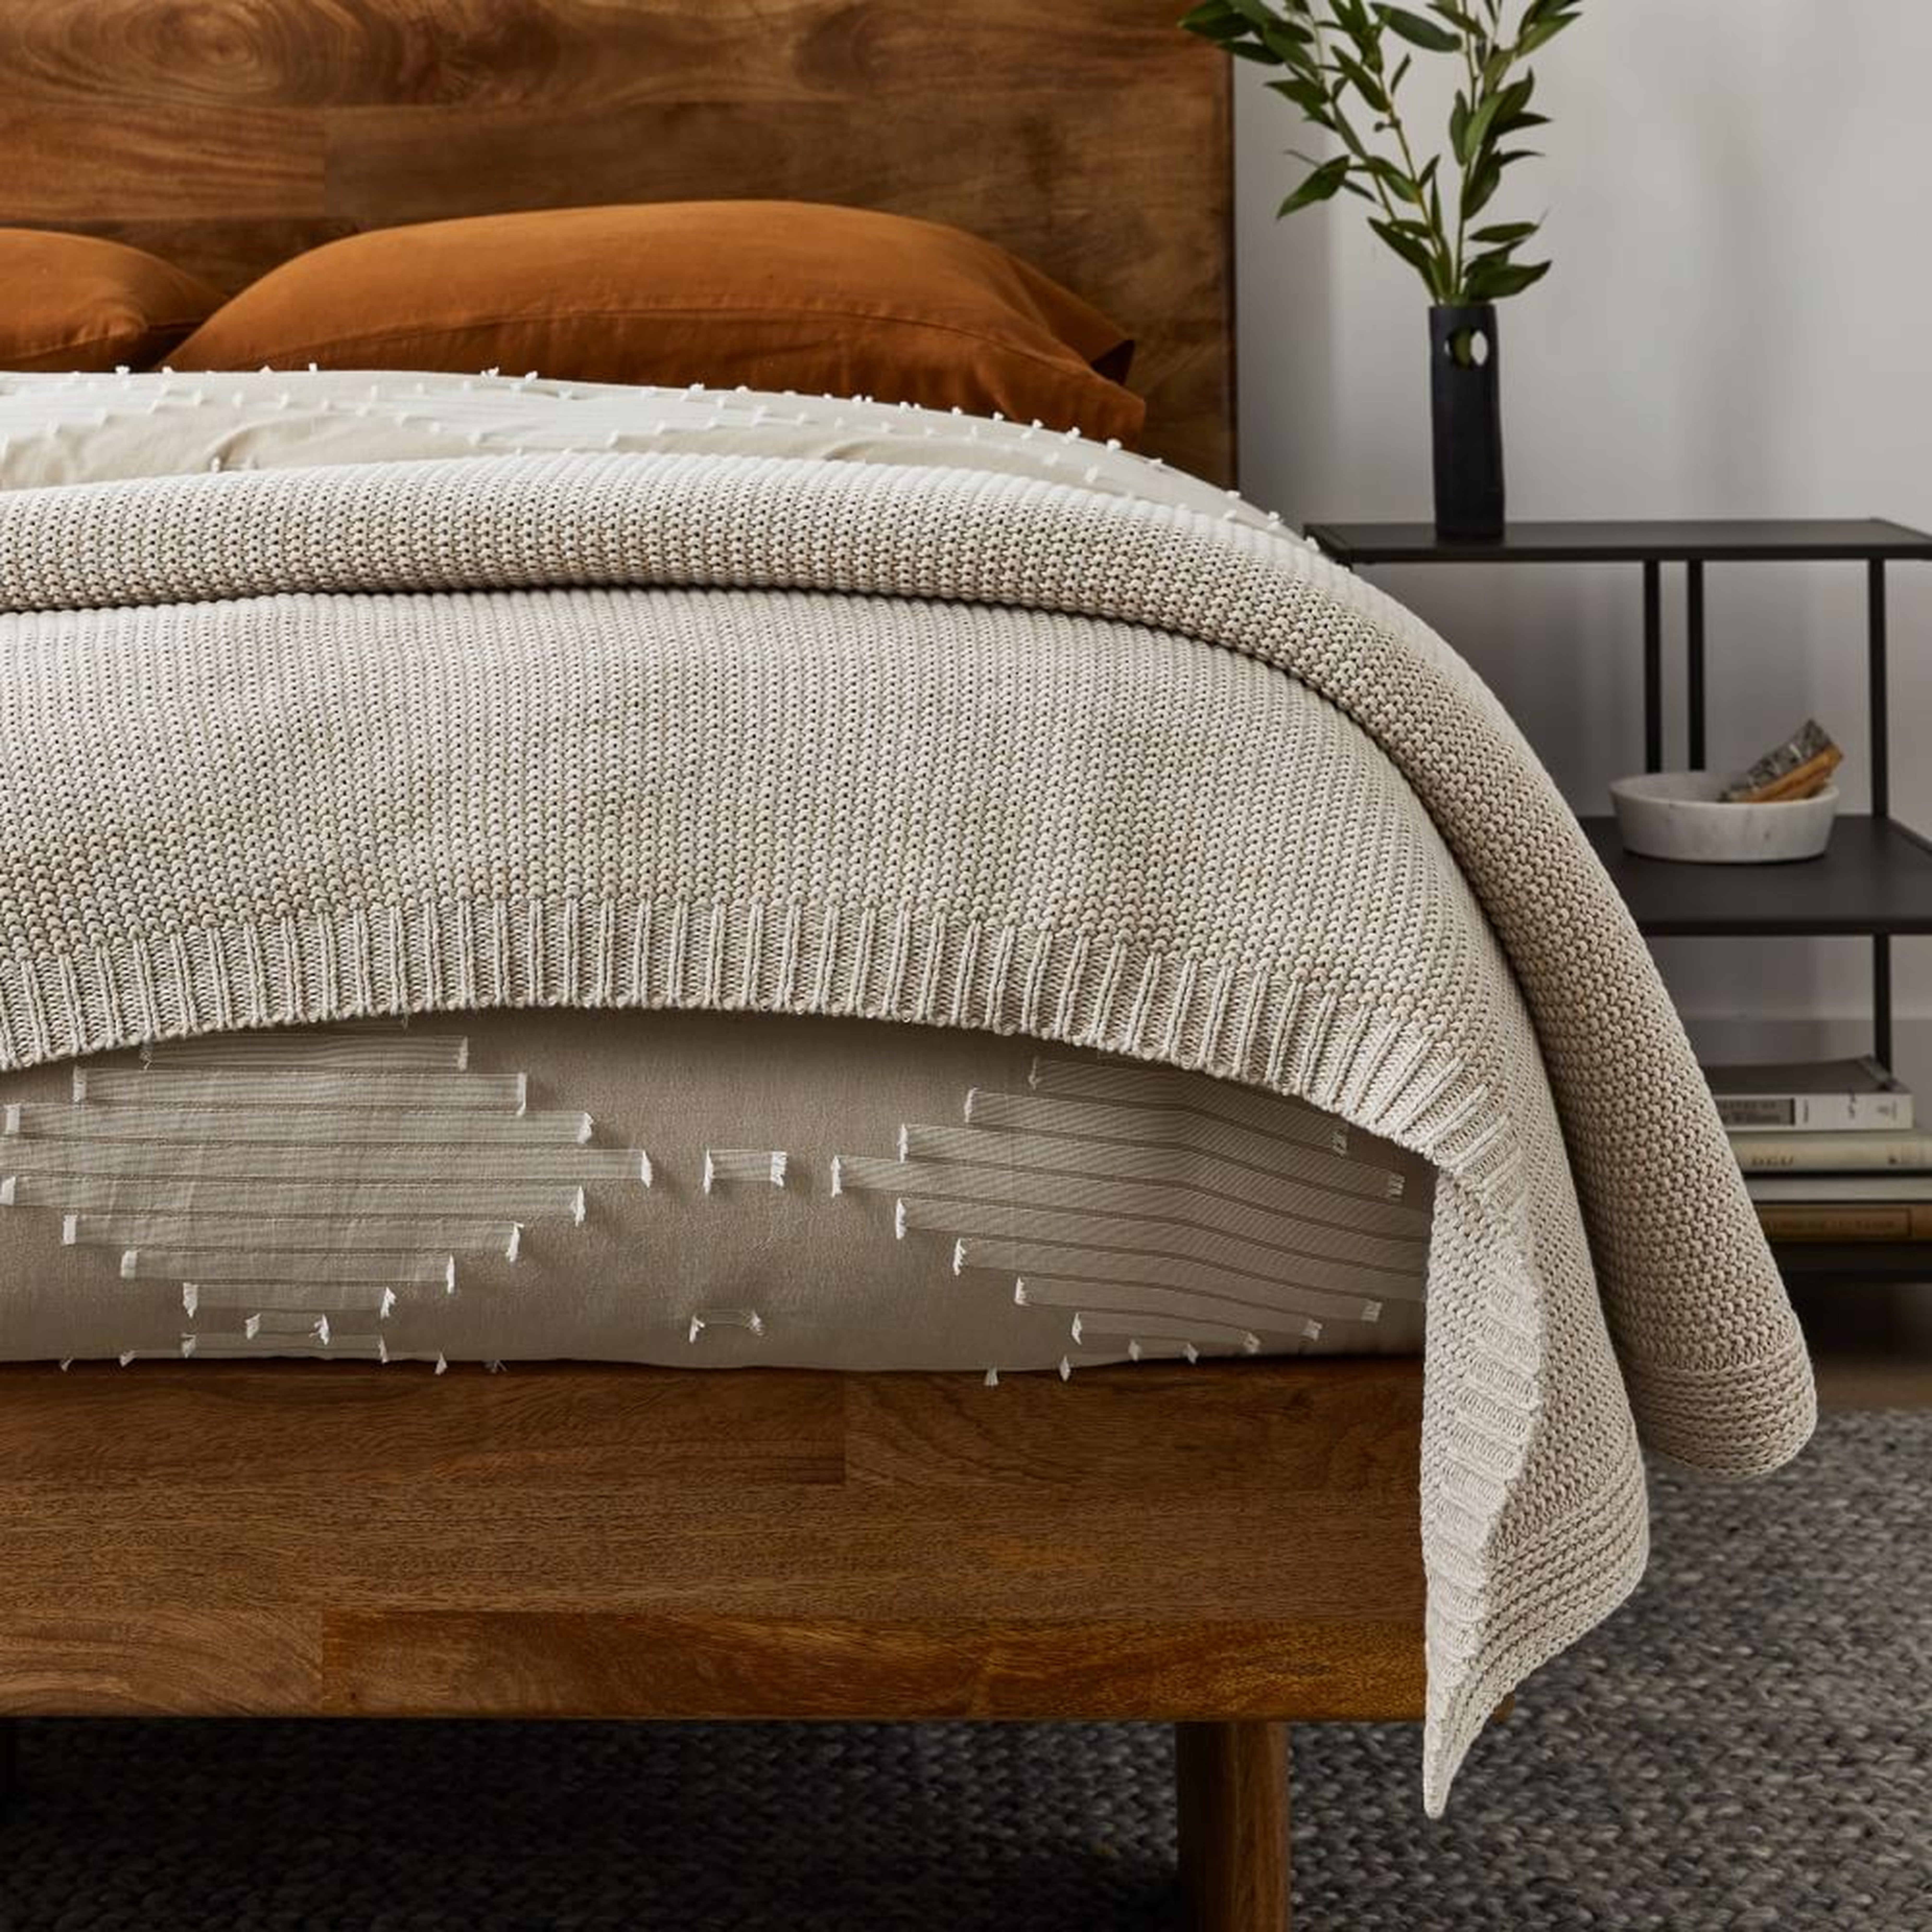 Cotton Knit Bed Blanket, King/Cal. King, Natural - West Elm